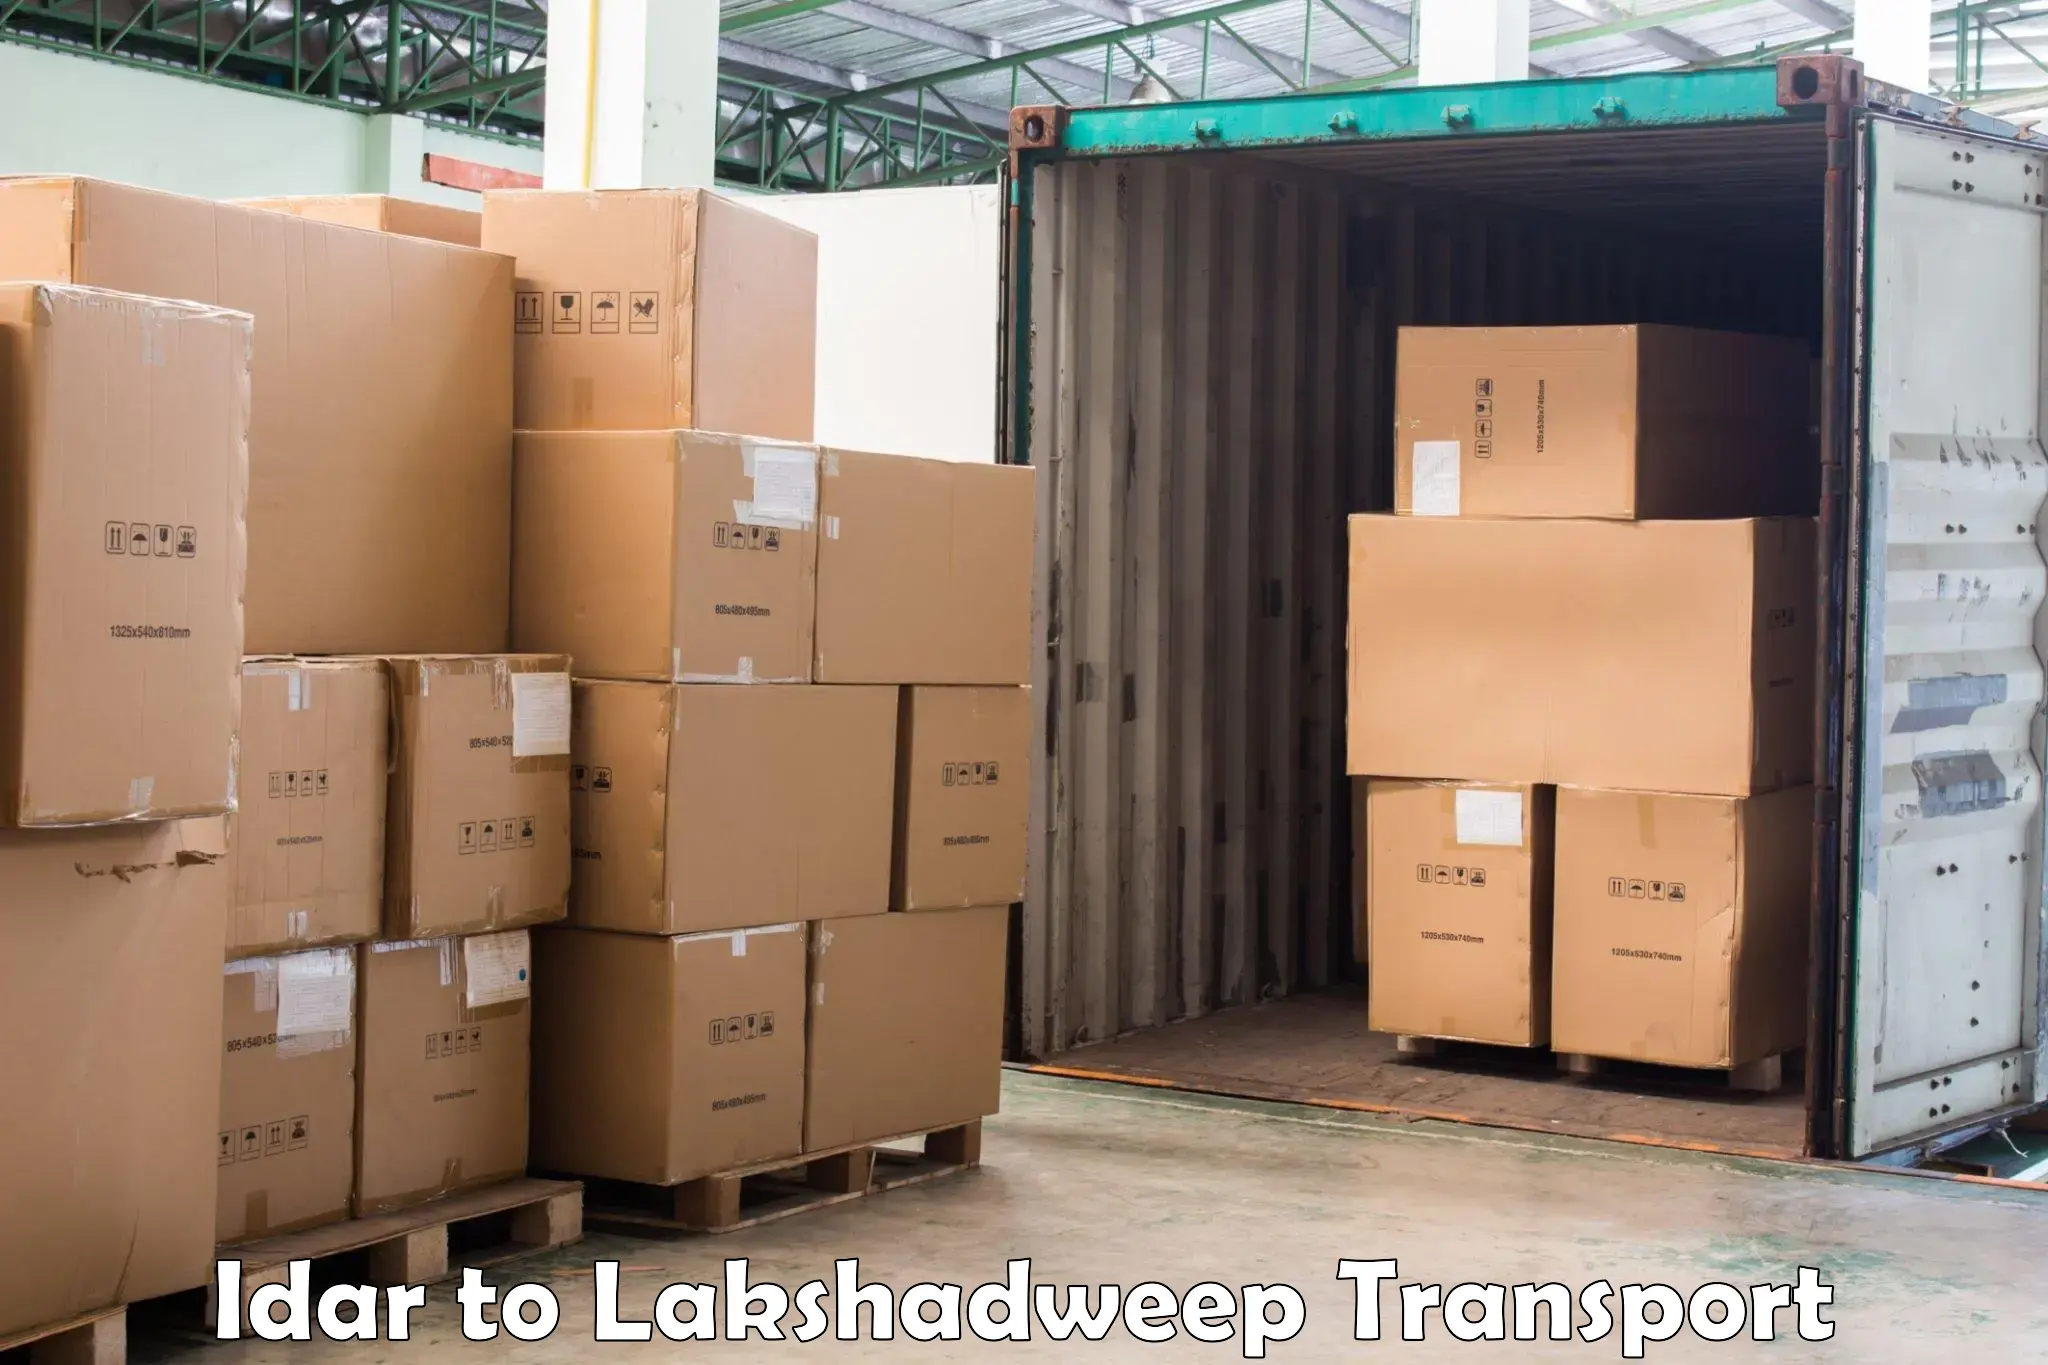 Furniture transport service Idar to Lakshadweep